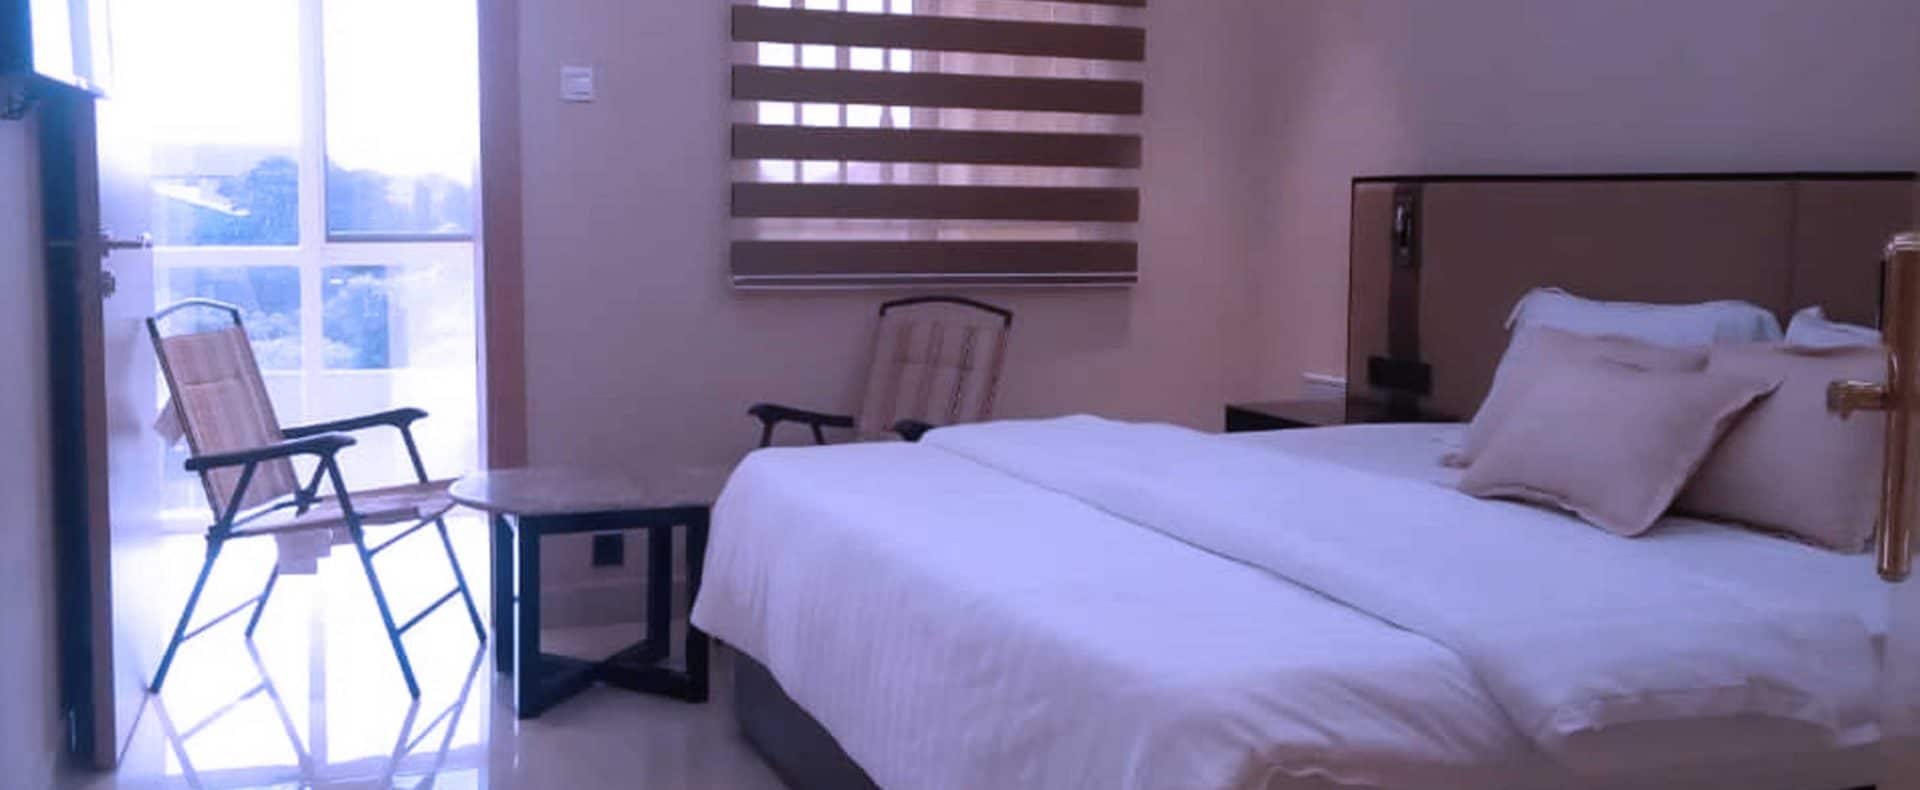 Hotel Exchequer Room In Owerri Nigeria